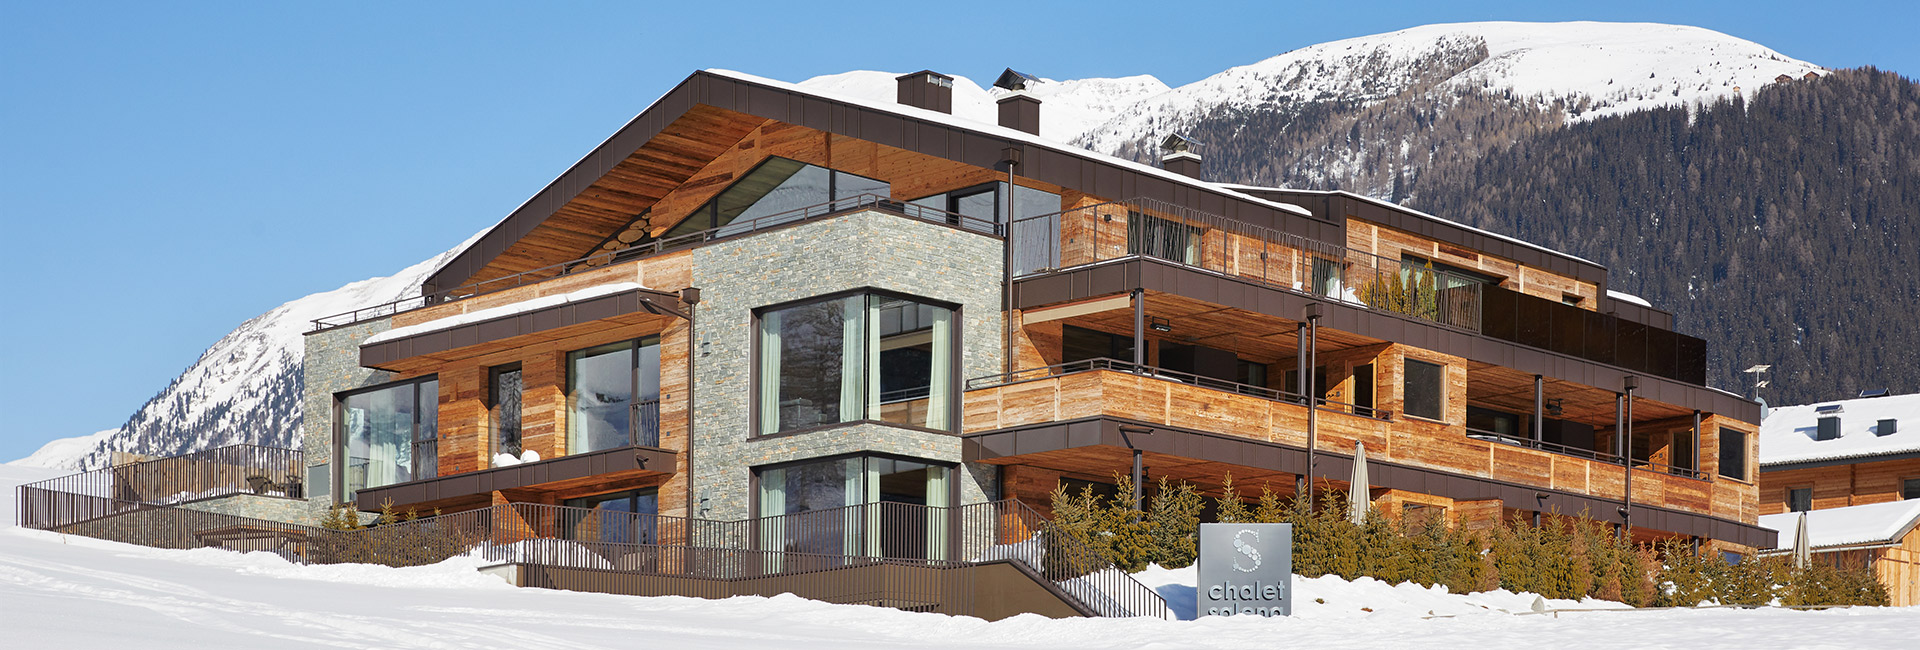 Chalet Salena Chalet-Apartments Winterurlaub Gsiesertal Südtirol